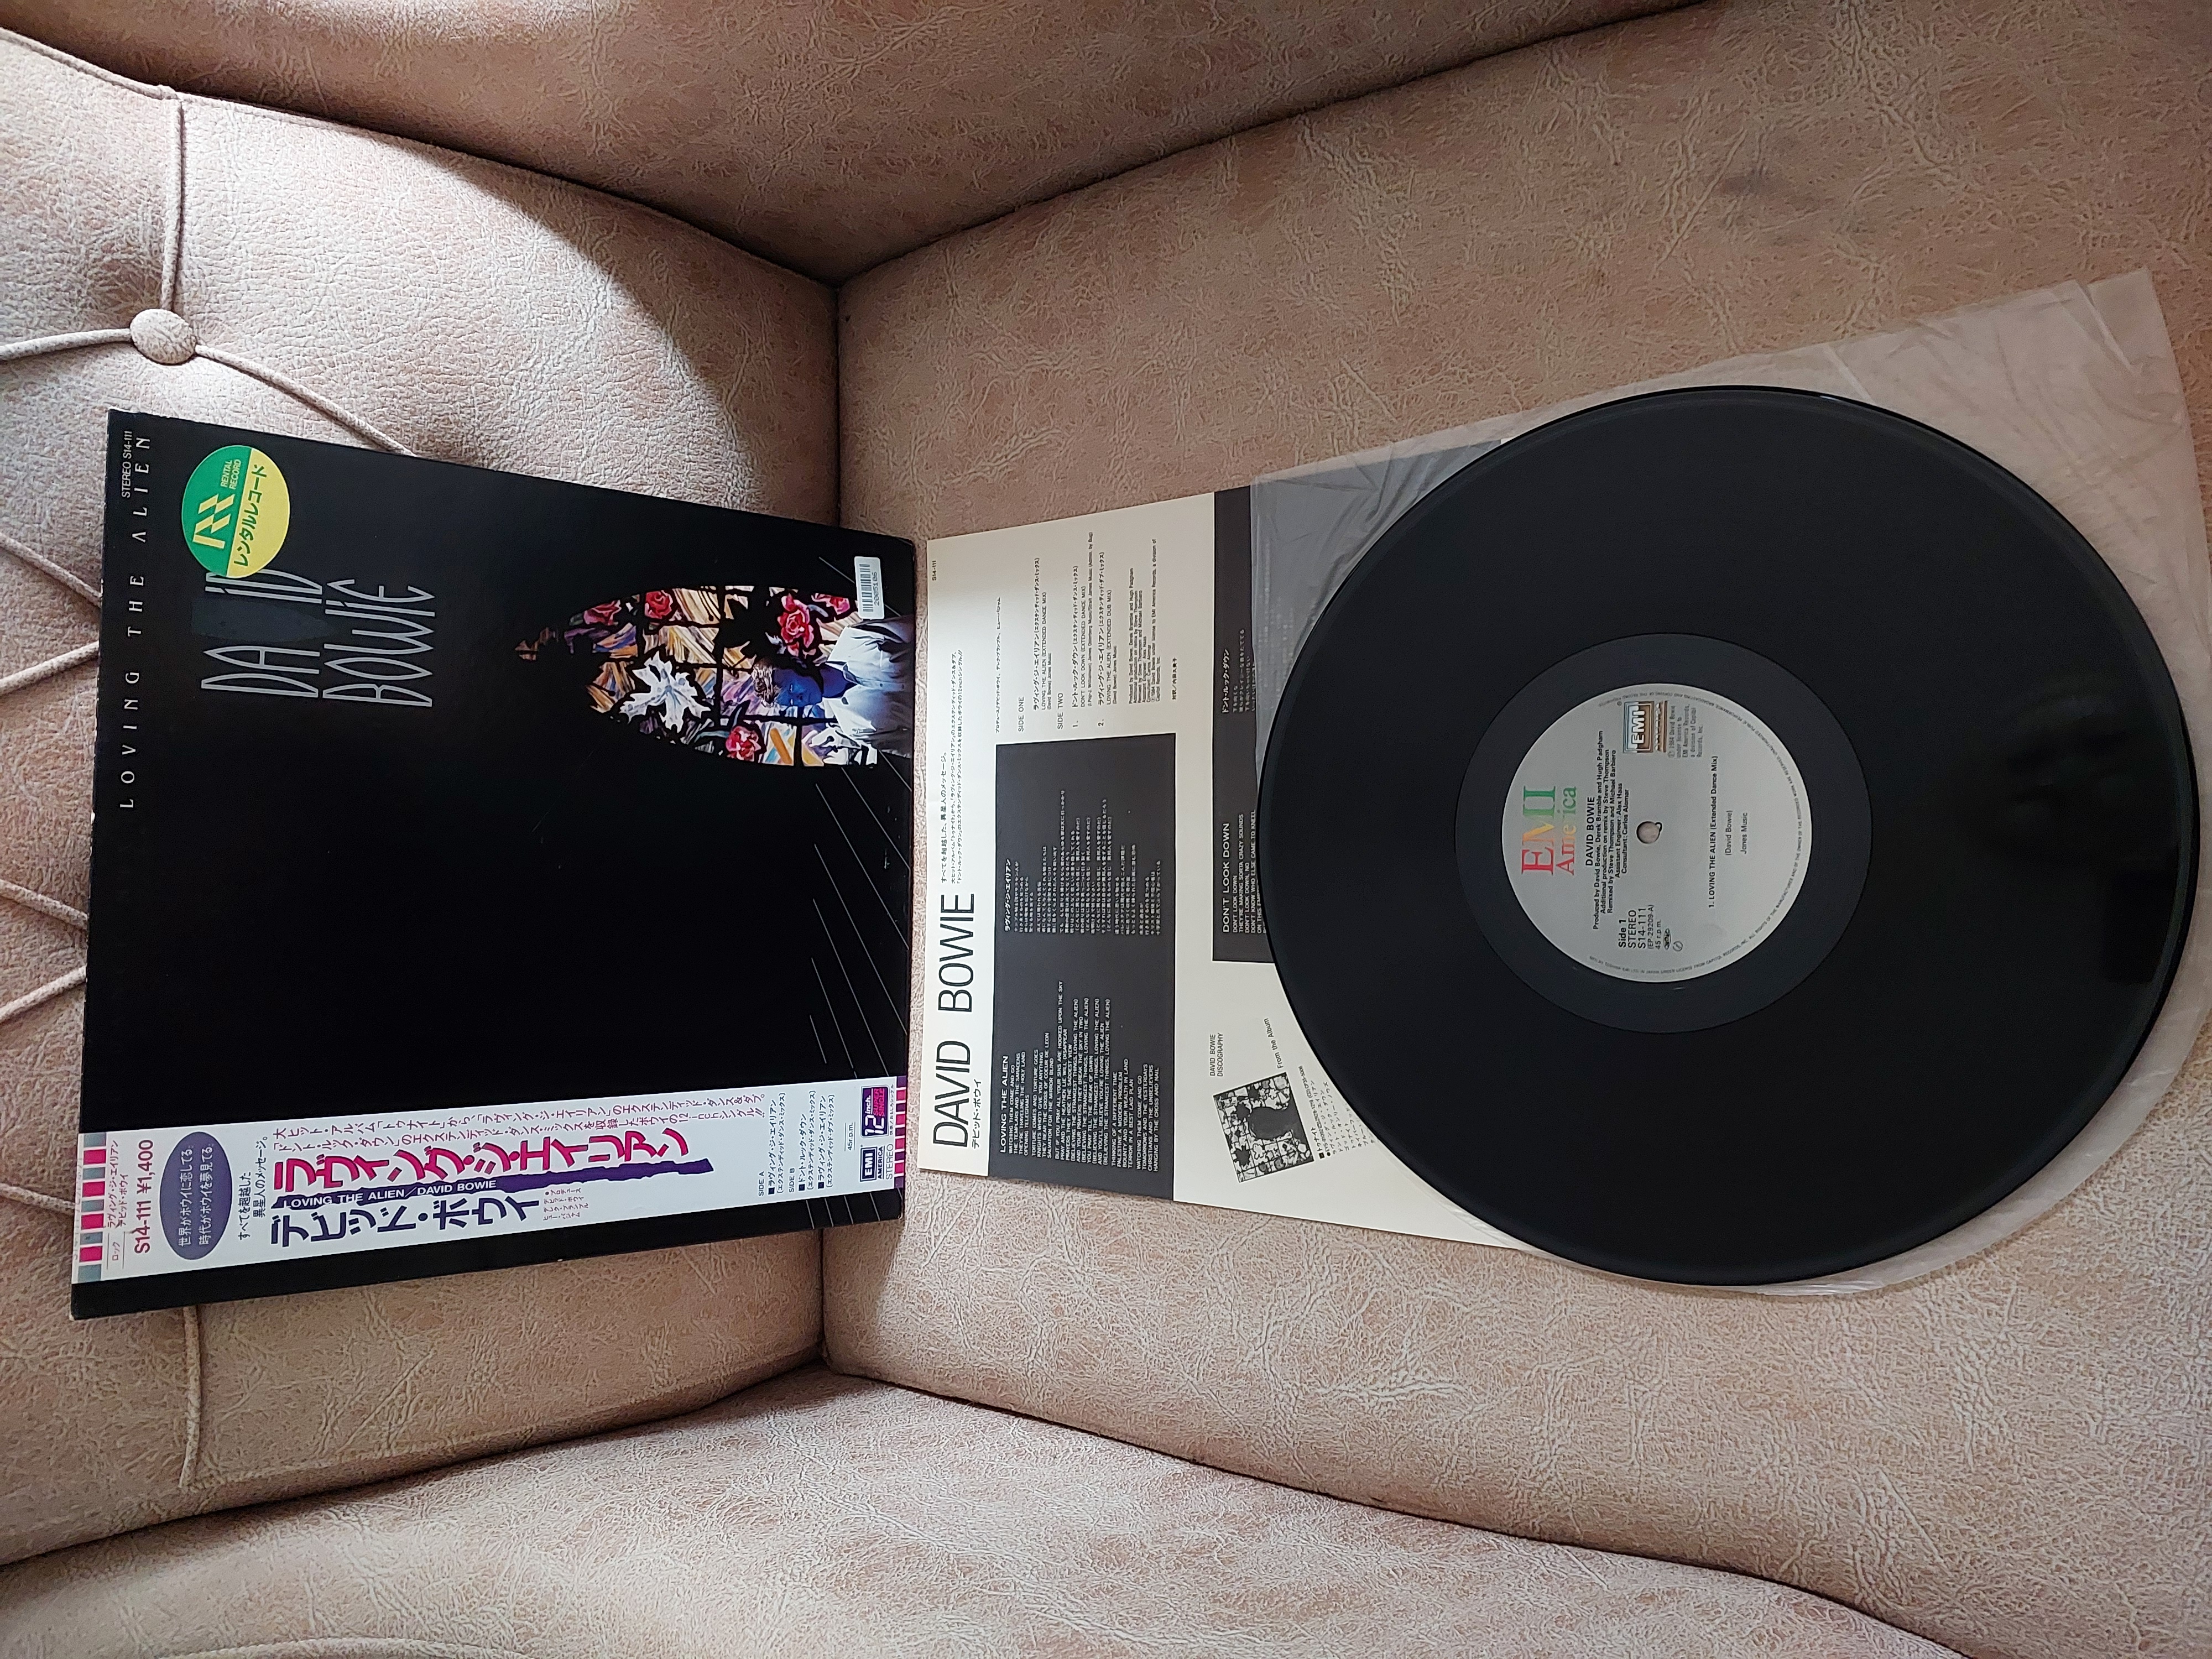 David Bowie – Loving The Alien - 1985 Japonya Basım 45 Rpm Maxi Plak